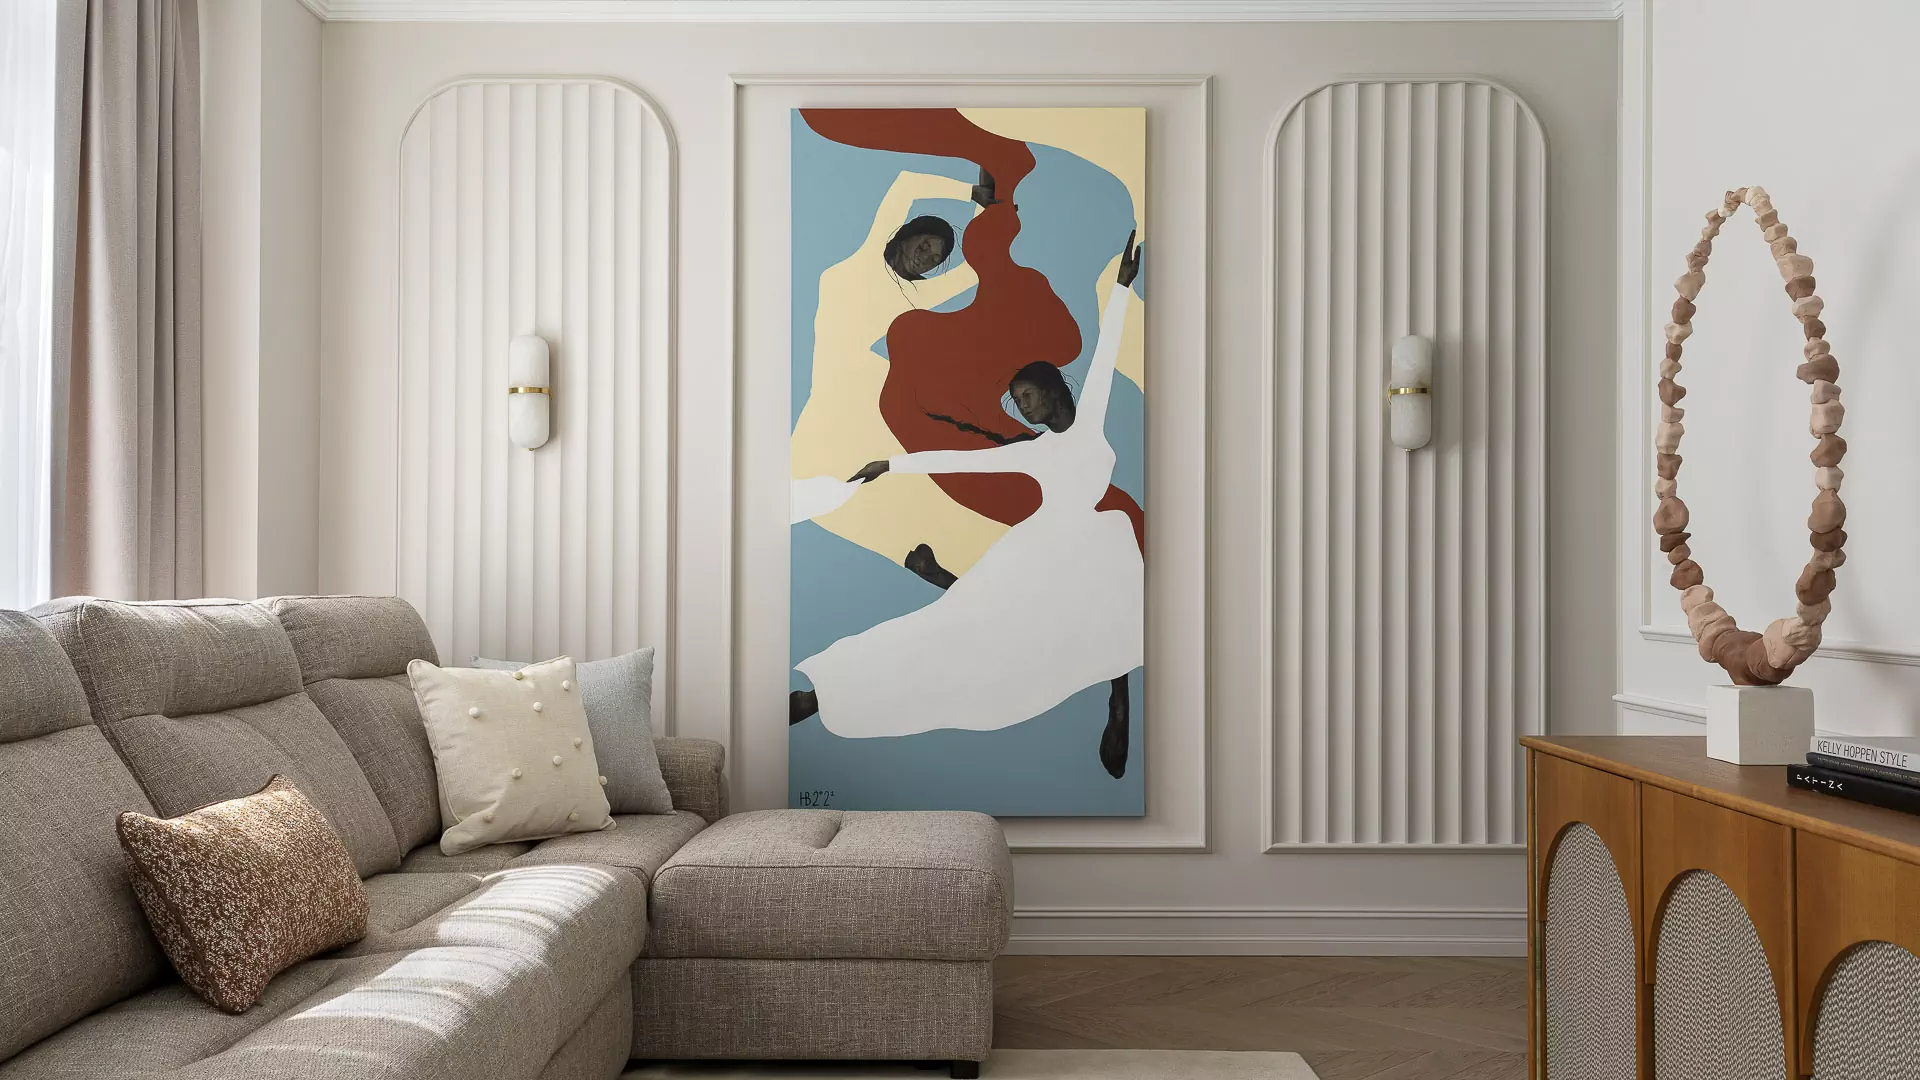 Абстрактное полотно как главный акцент интерьера в классическом стиле — проект Ирины Акимовой